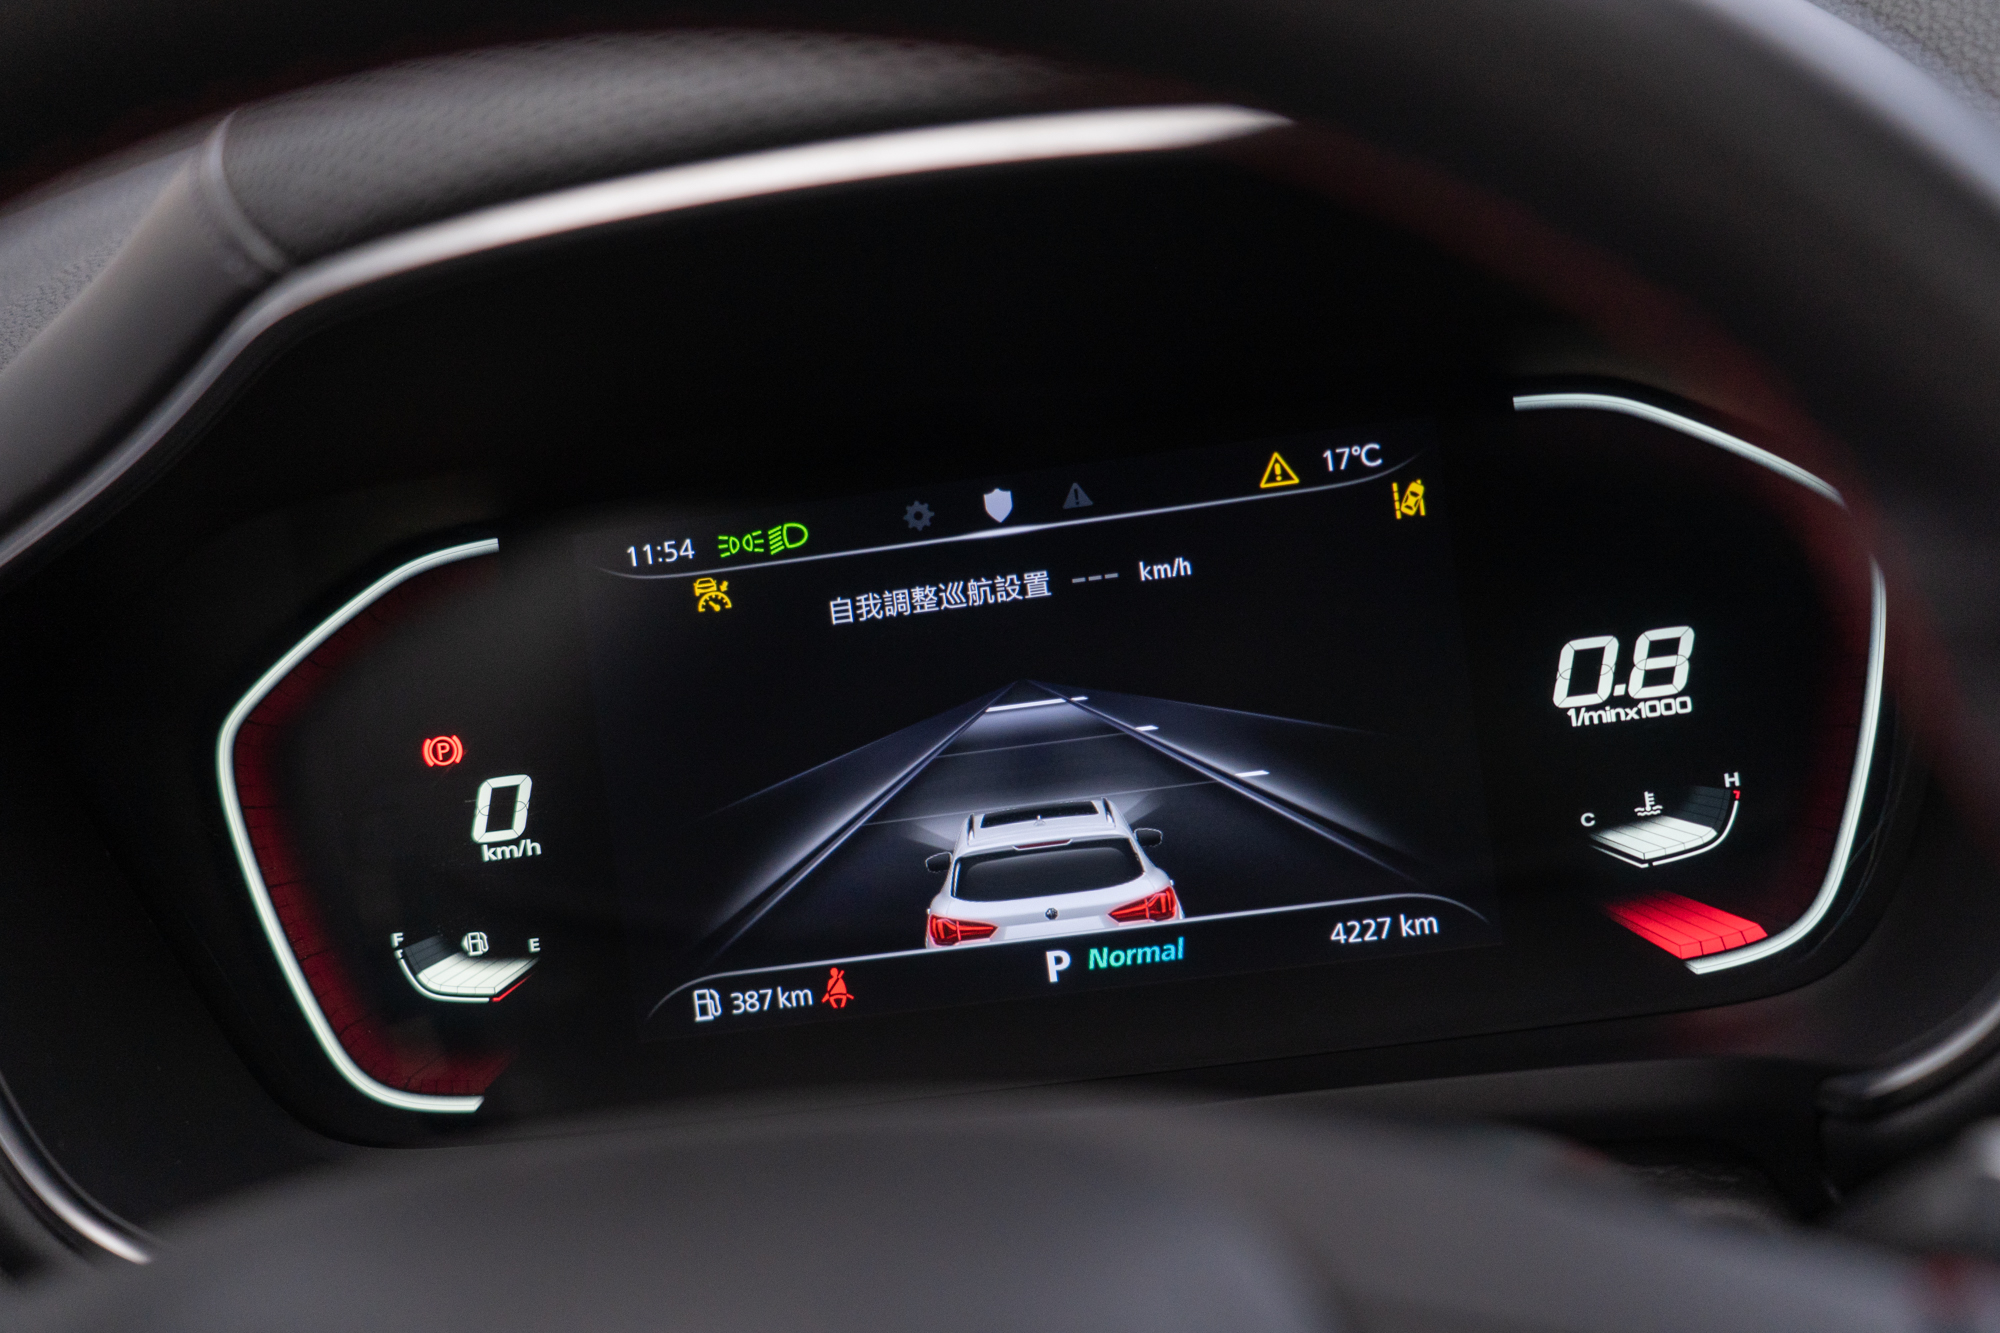 數位儀錶達 12.3 吋，可完整顯示各式車輛運作狀況與其他資訊，甚至半自動駕駛輔助運作狀況也能完整呈現。